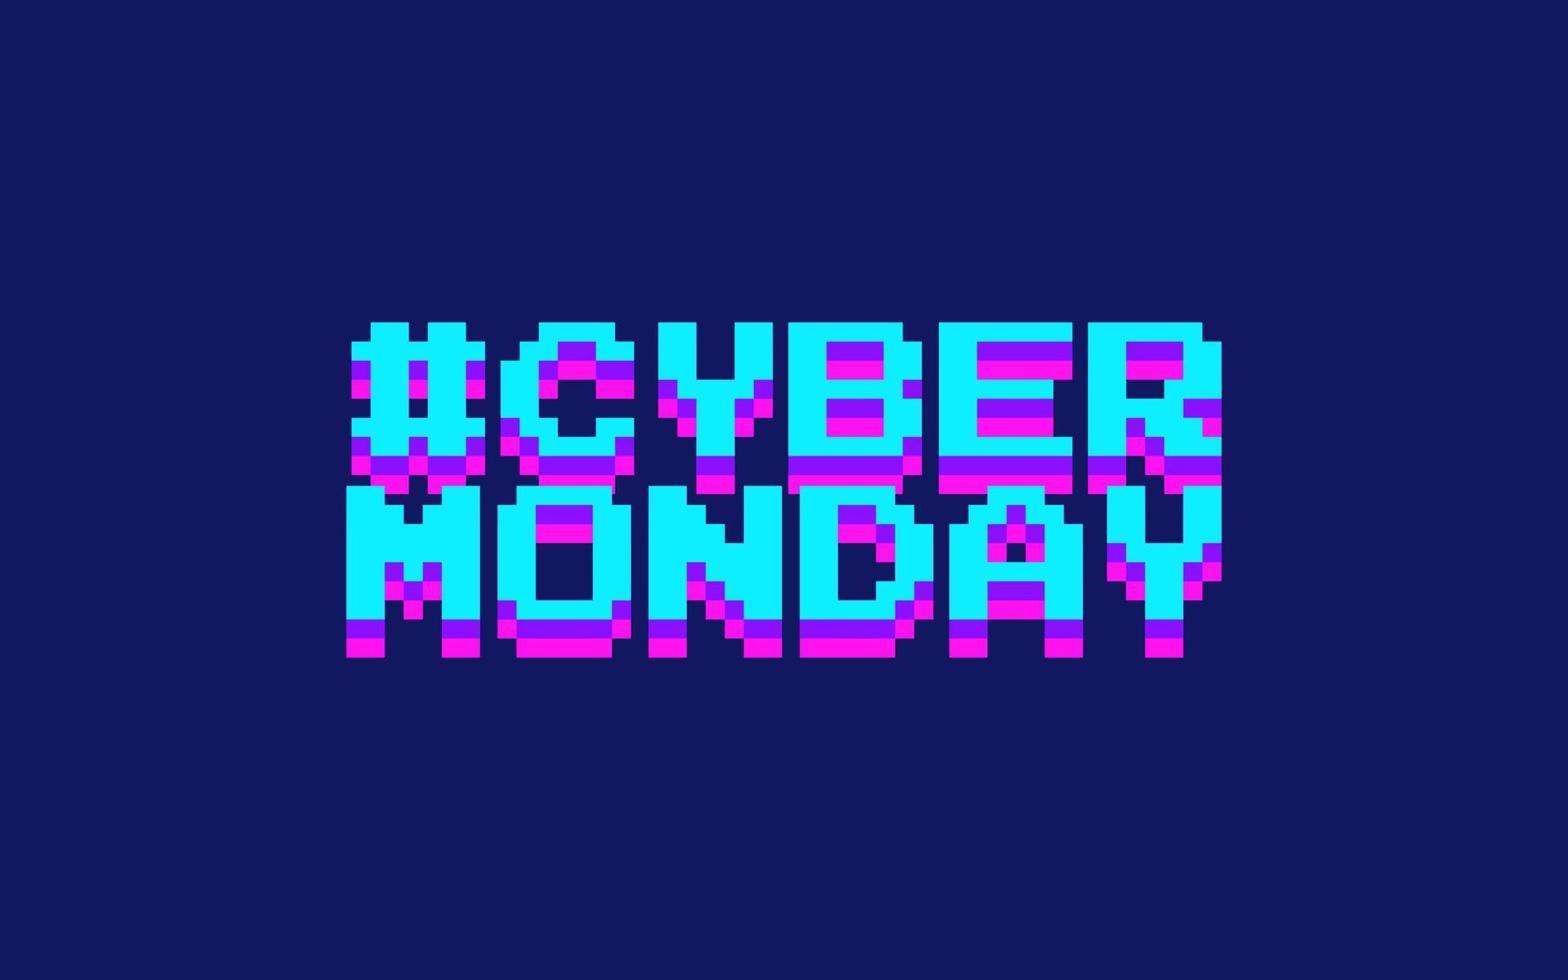 bannière d'art pixel cyber lundi, isolée sur fond bleu marine. eps vectoriel modifiable.